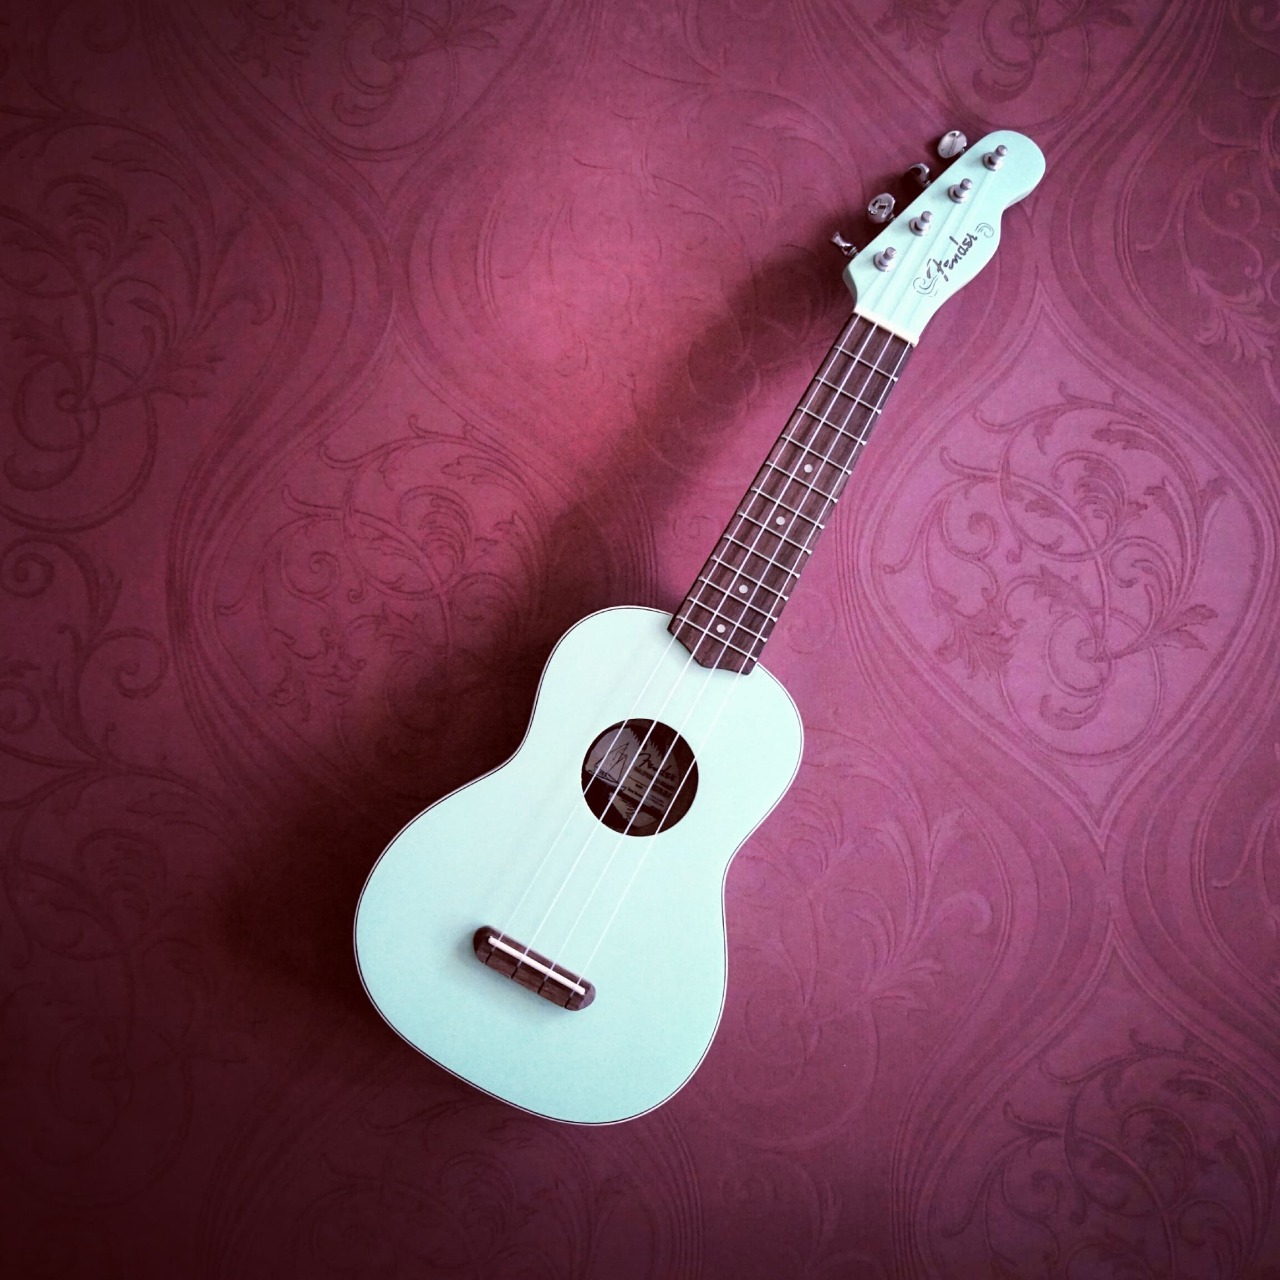 Nhạc cụ Ukulele với thiết kế nhỏ gọn, xinh xắn sẽ là một món nhạc cụ được nhiều bạn ưa chuộng. Việc chơi đàn ukulele cơ bản cũng ko khó dành cho các bạn yêu thích nhạc